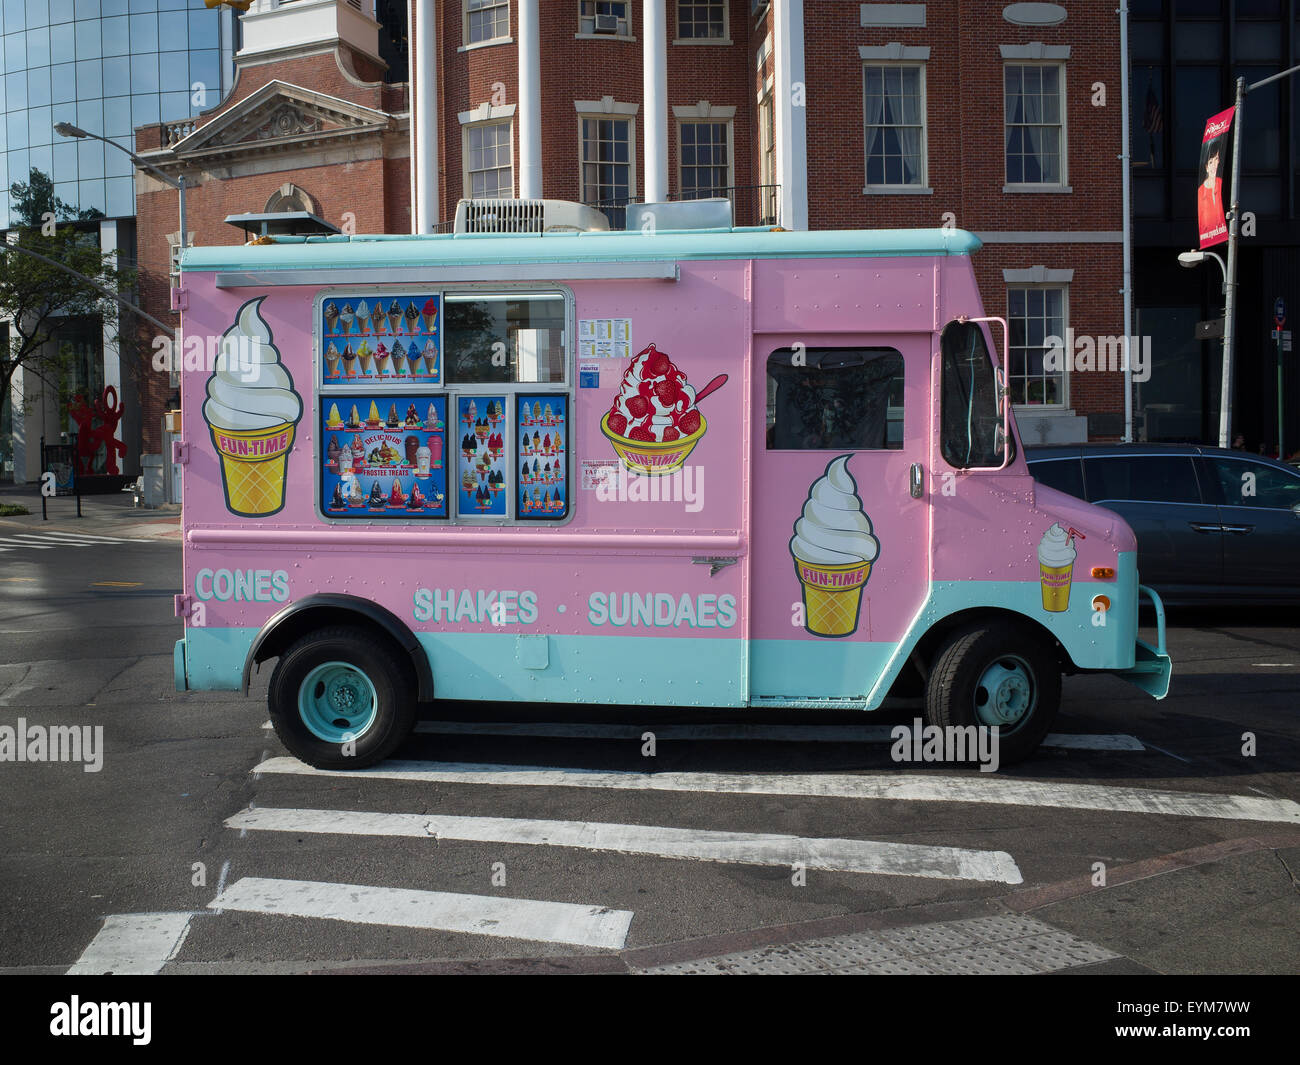 Camion dei gelati rosa e ottanio in una strada di New York City - 29 luglio 2015, Battery Plaza, New York City, NY, USA Foto Stock